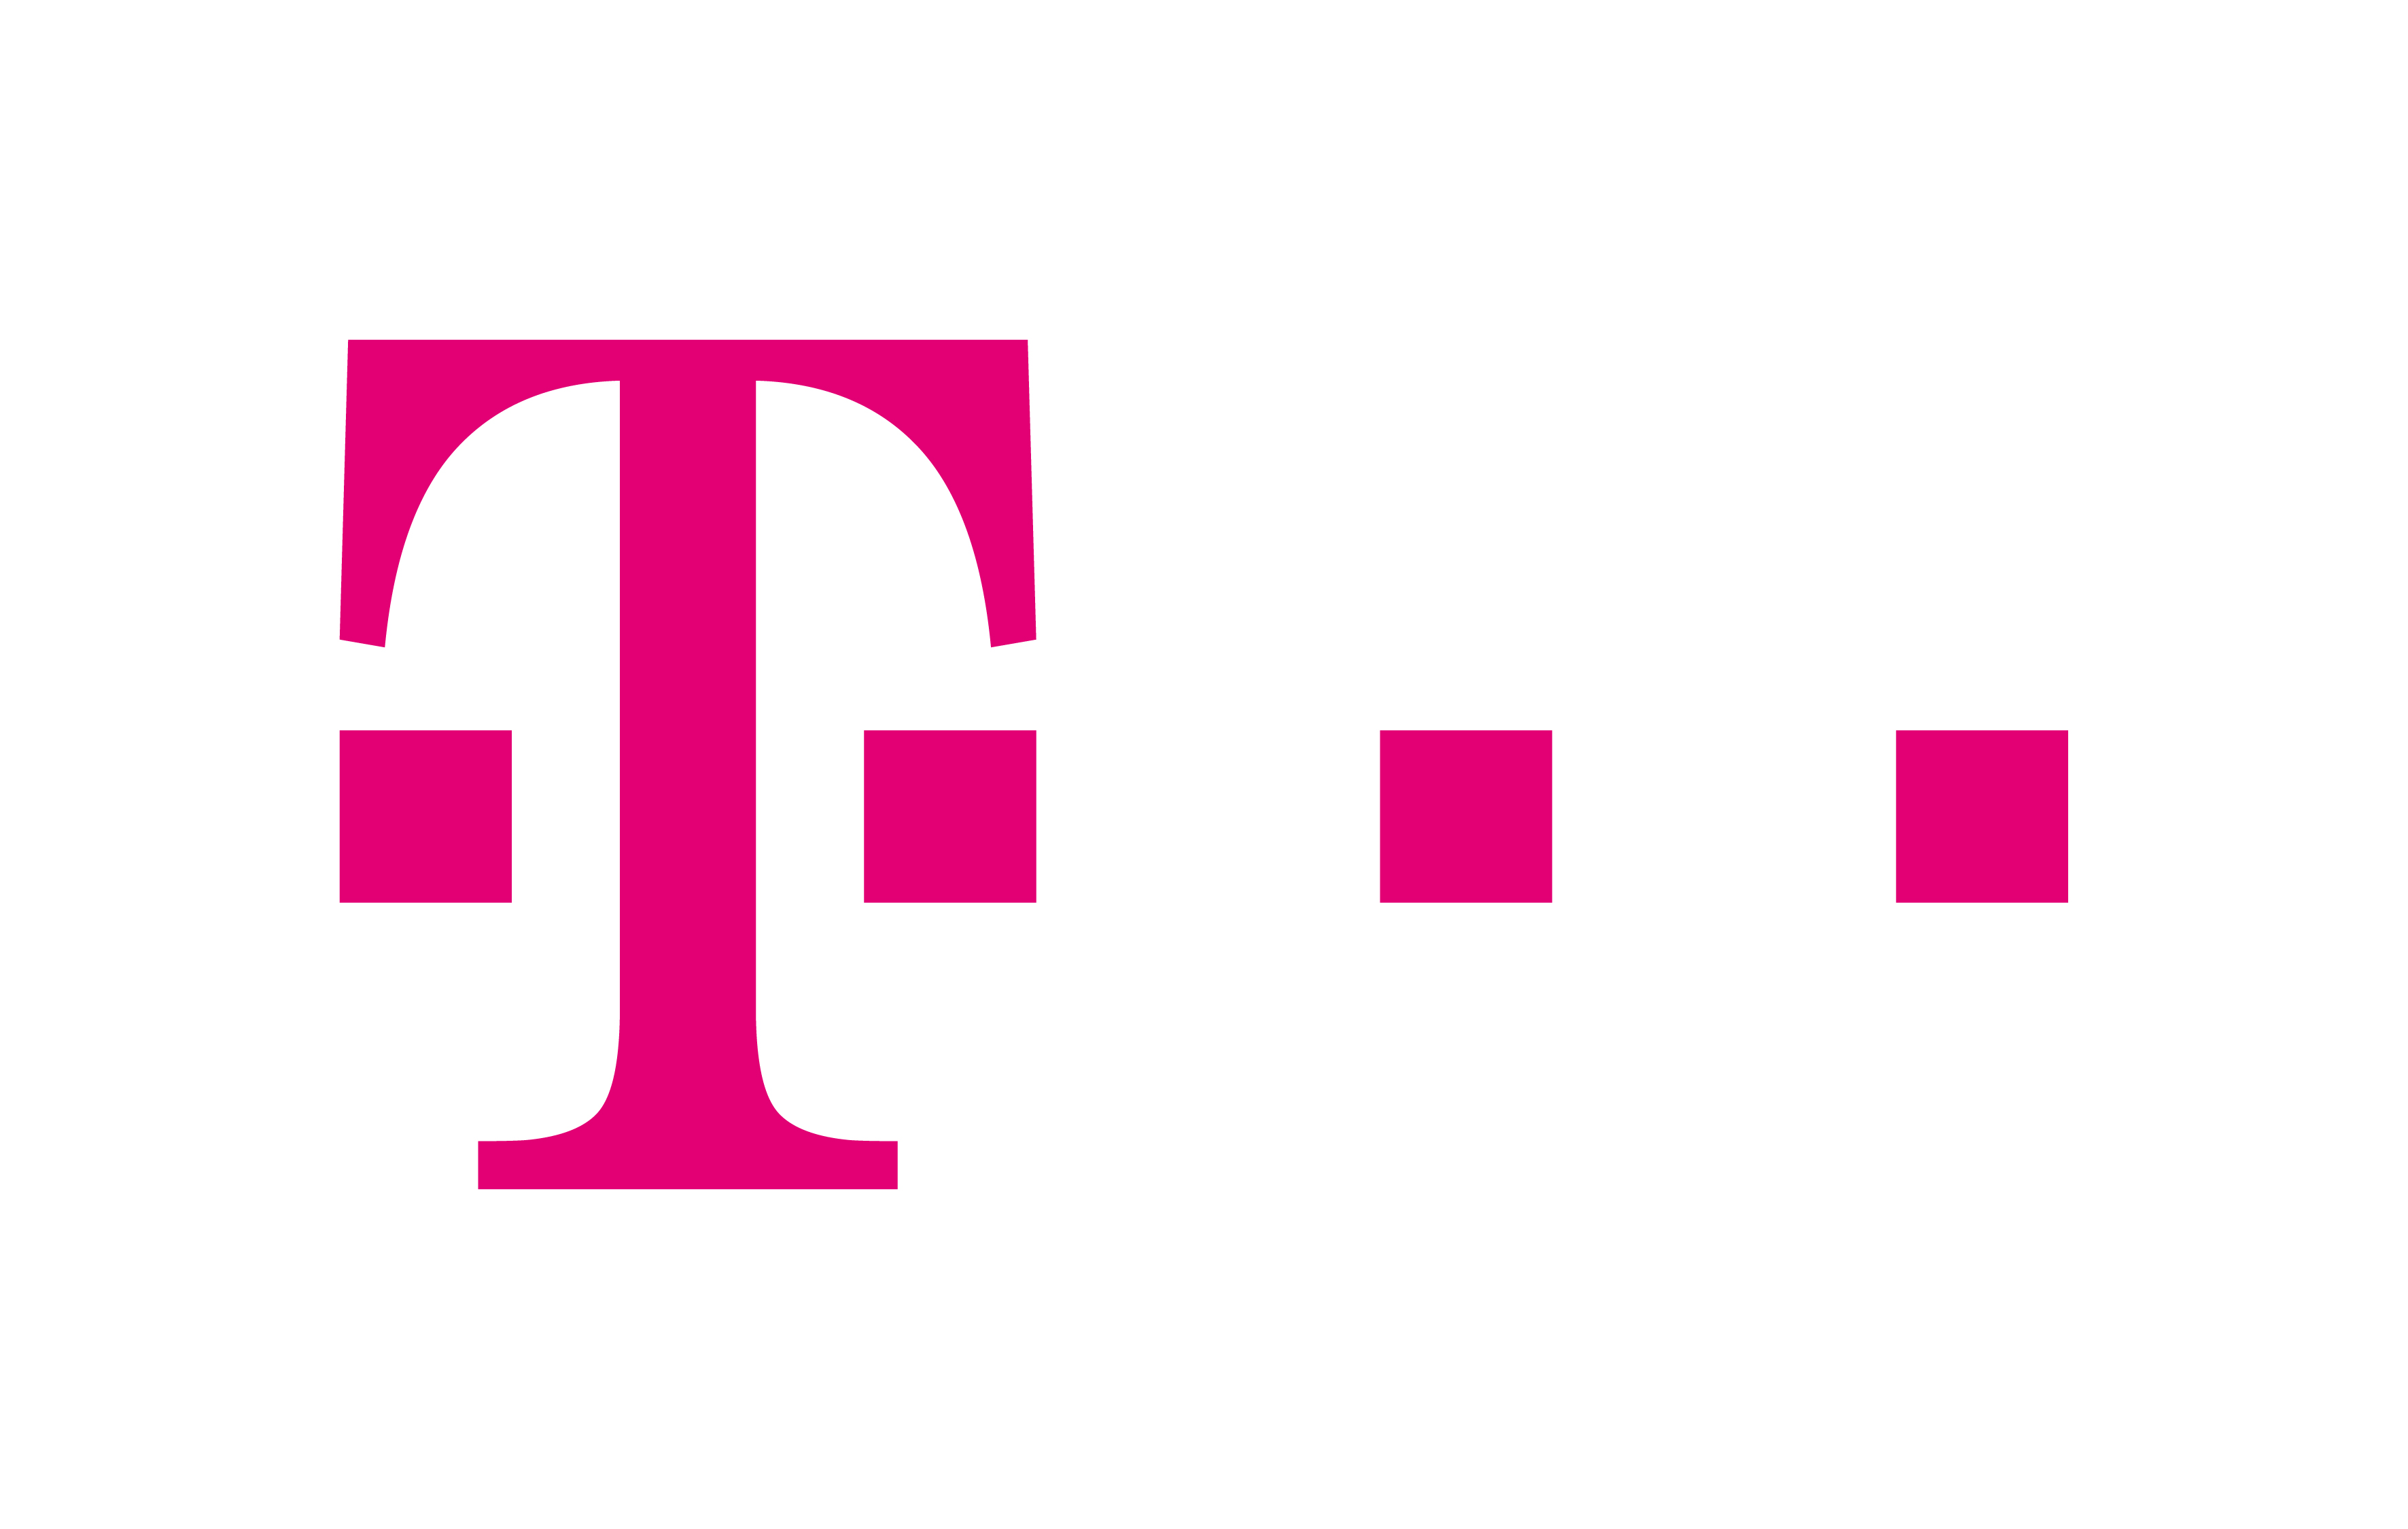  - 9077-logo-pressemitteilung-deutsche-telekom-ag